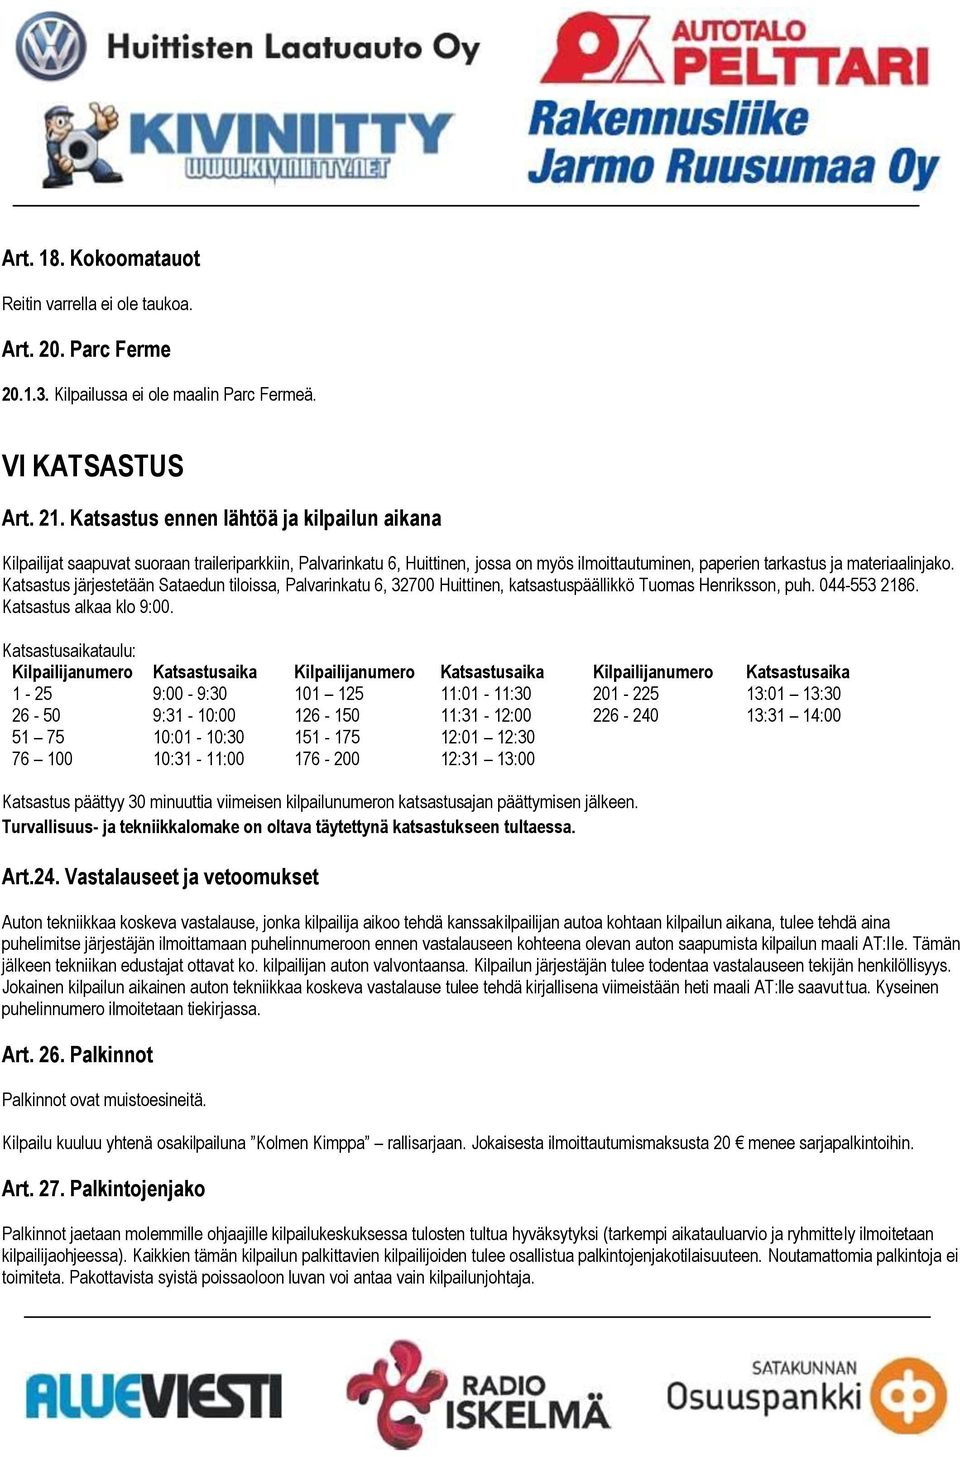 Katsastus järjestetään Sataedun tiloissa, Palvarinkatu 6, 32700 Huittinen, katsastuspäällikkö Tuomas Henriksson, puh. 044-553 2186. Katsastus alkaa klo 9:00.